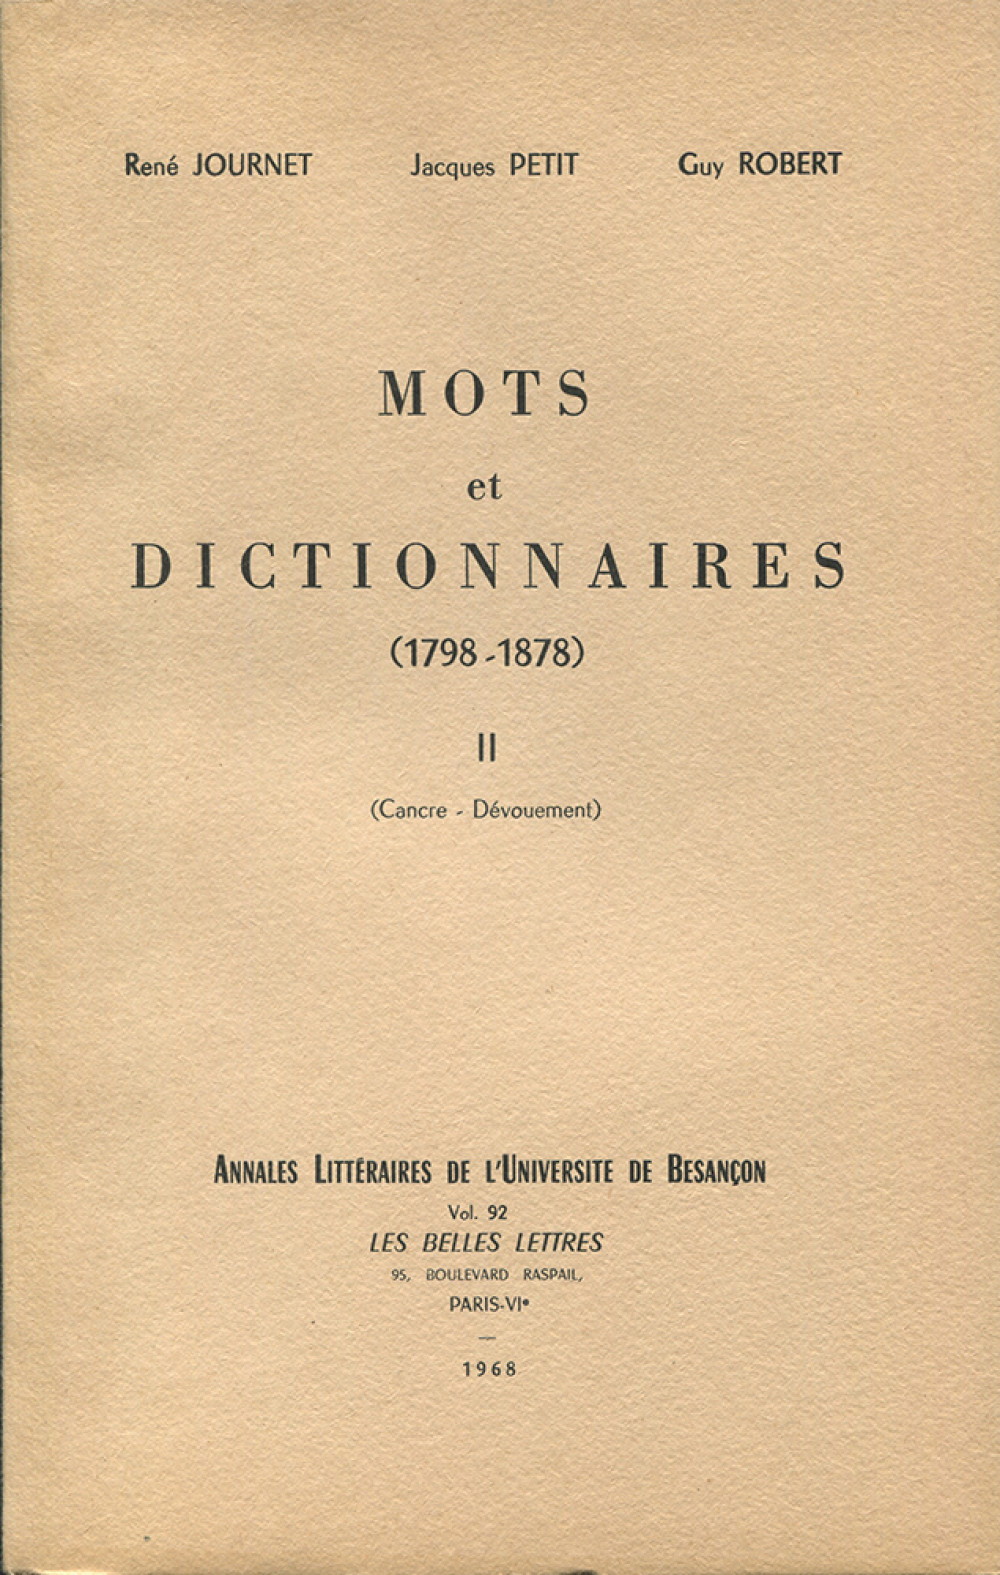 Mots et dictionnaires II (1798-1878)